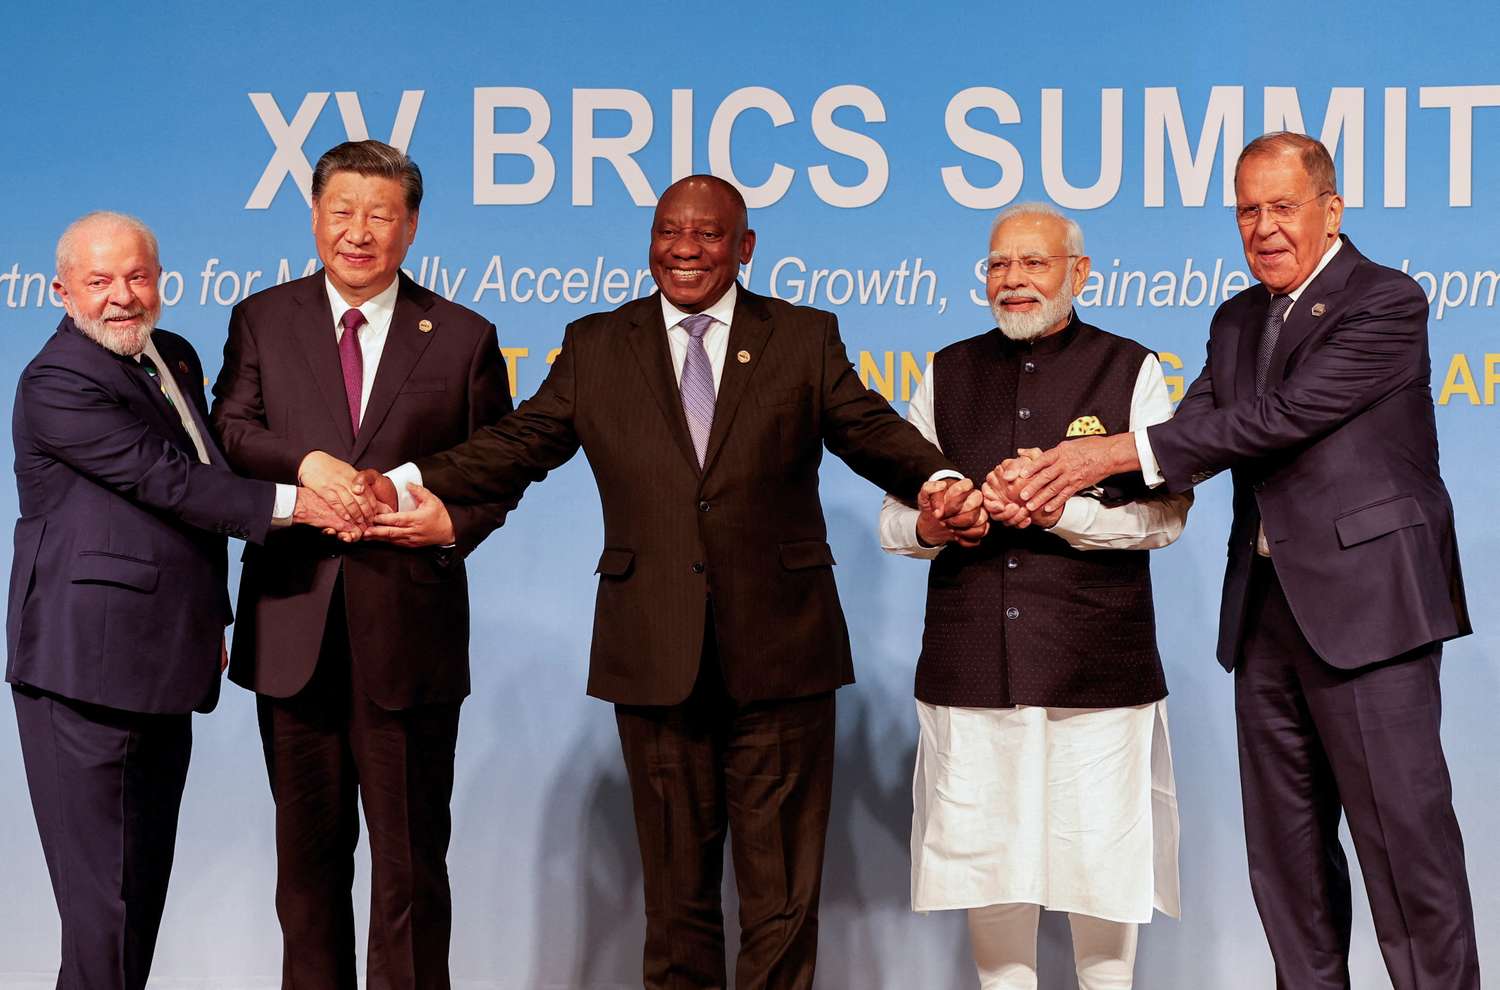 Los líderes de los países Brics anunciaron la “histórica” incorporación de seis países